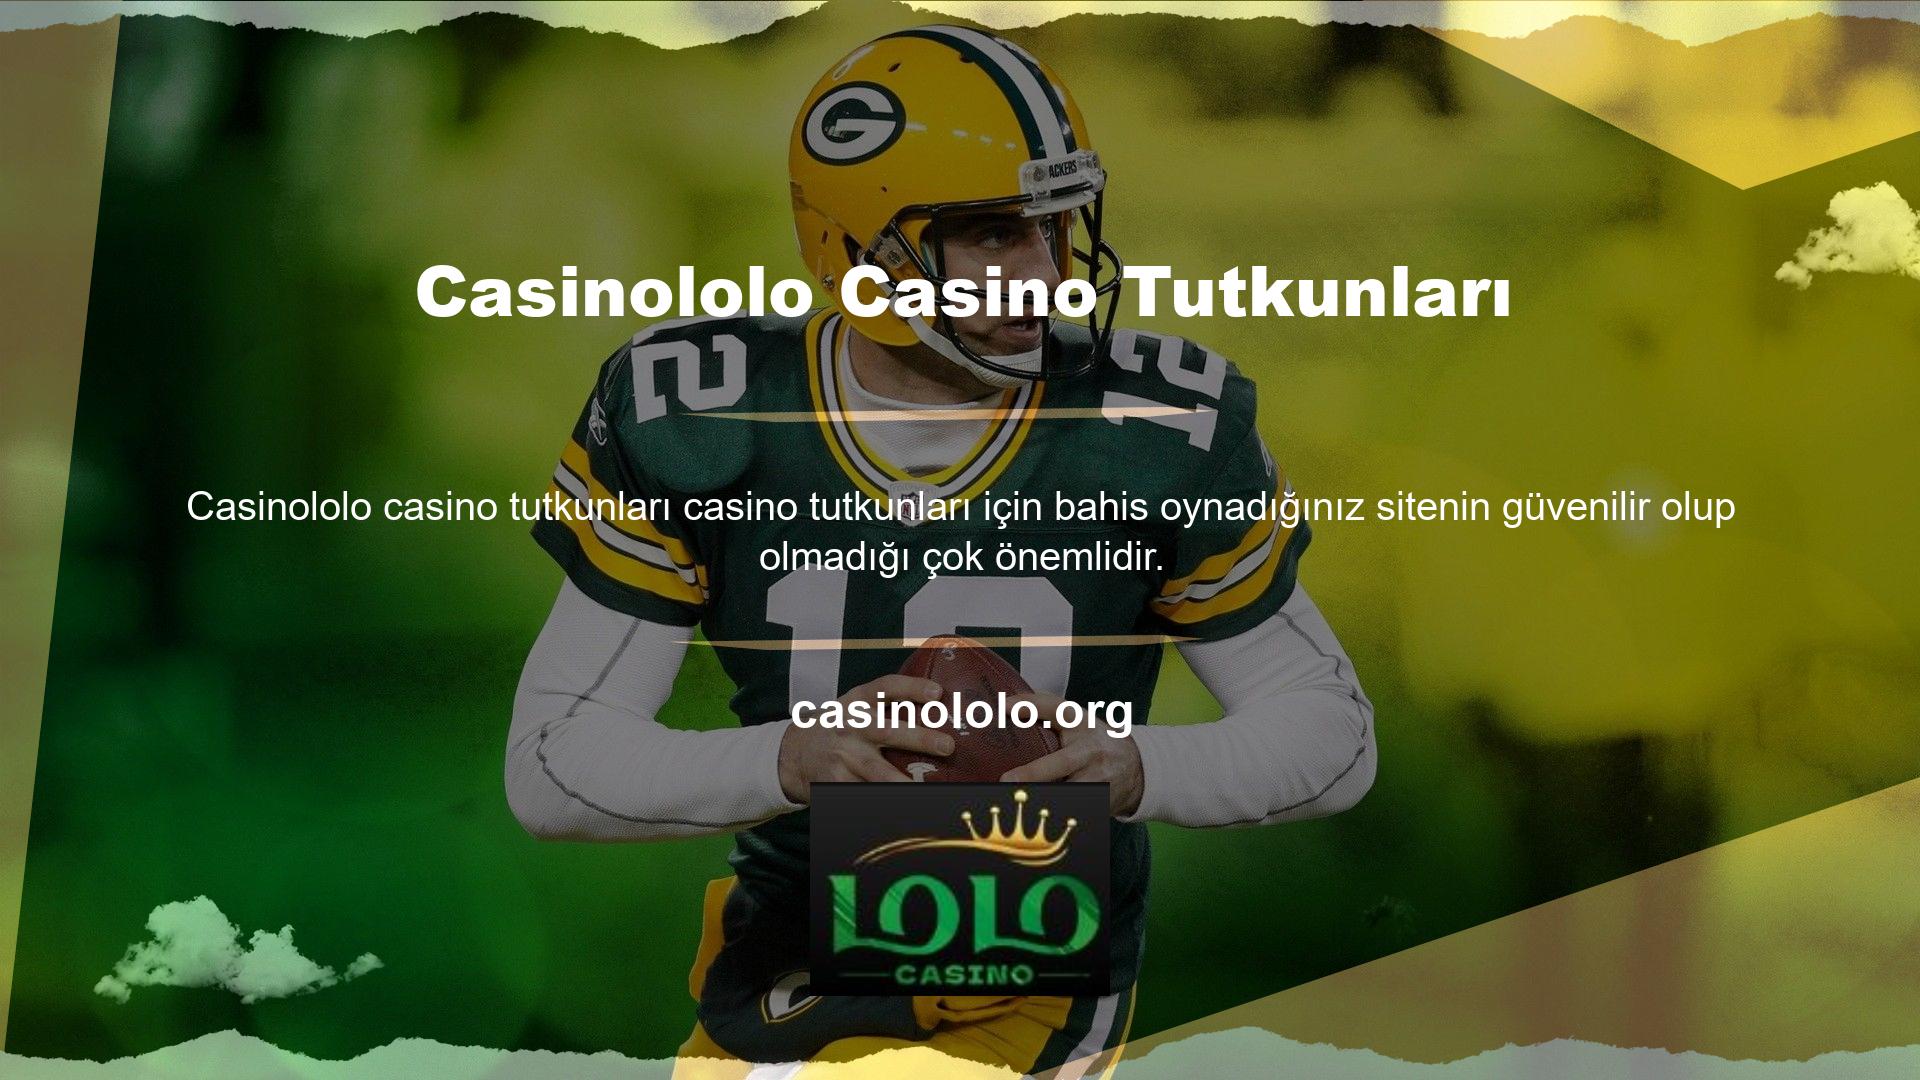 Dünya çapında online casino oyunlarına ilgi arttıkça bu alanda uzmanlaşmış web sitelerinin sayısı da artıyor